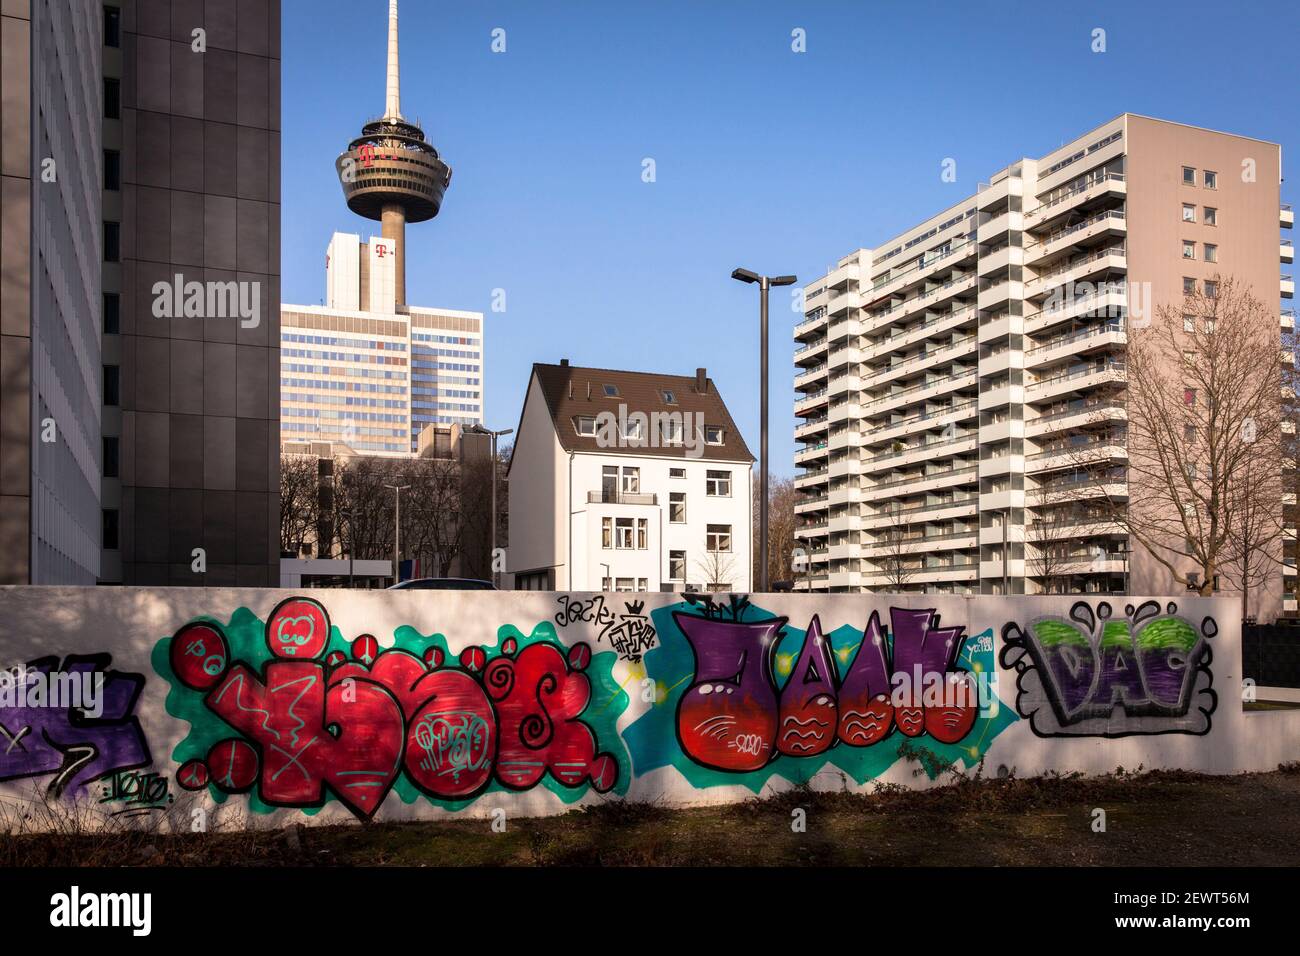 Wohngebäude zwischen Büroturm und Hochhaus in der Venloer Straße, Colonius Fernsehturm, Wand mit Graffiti, Köln, Deutschland. Stockfoto